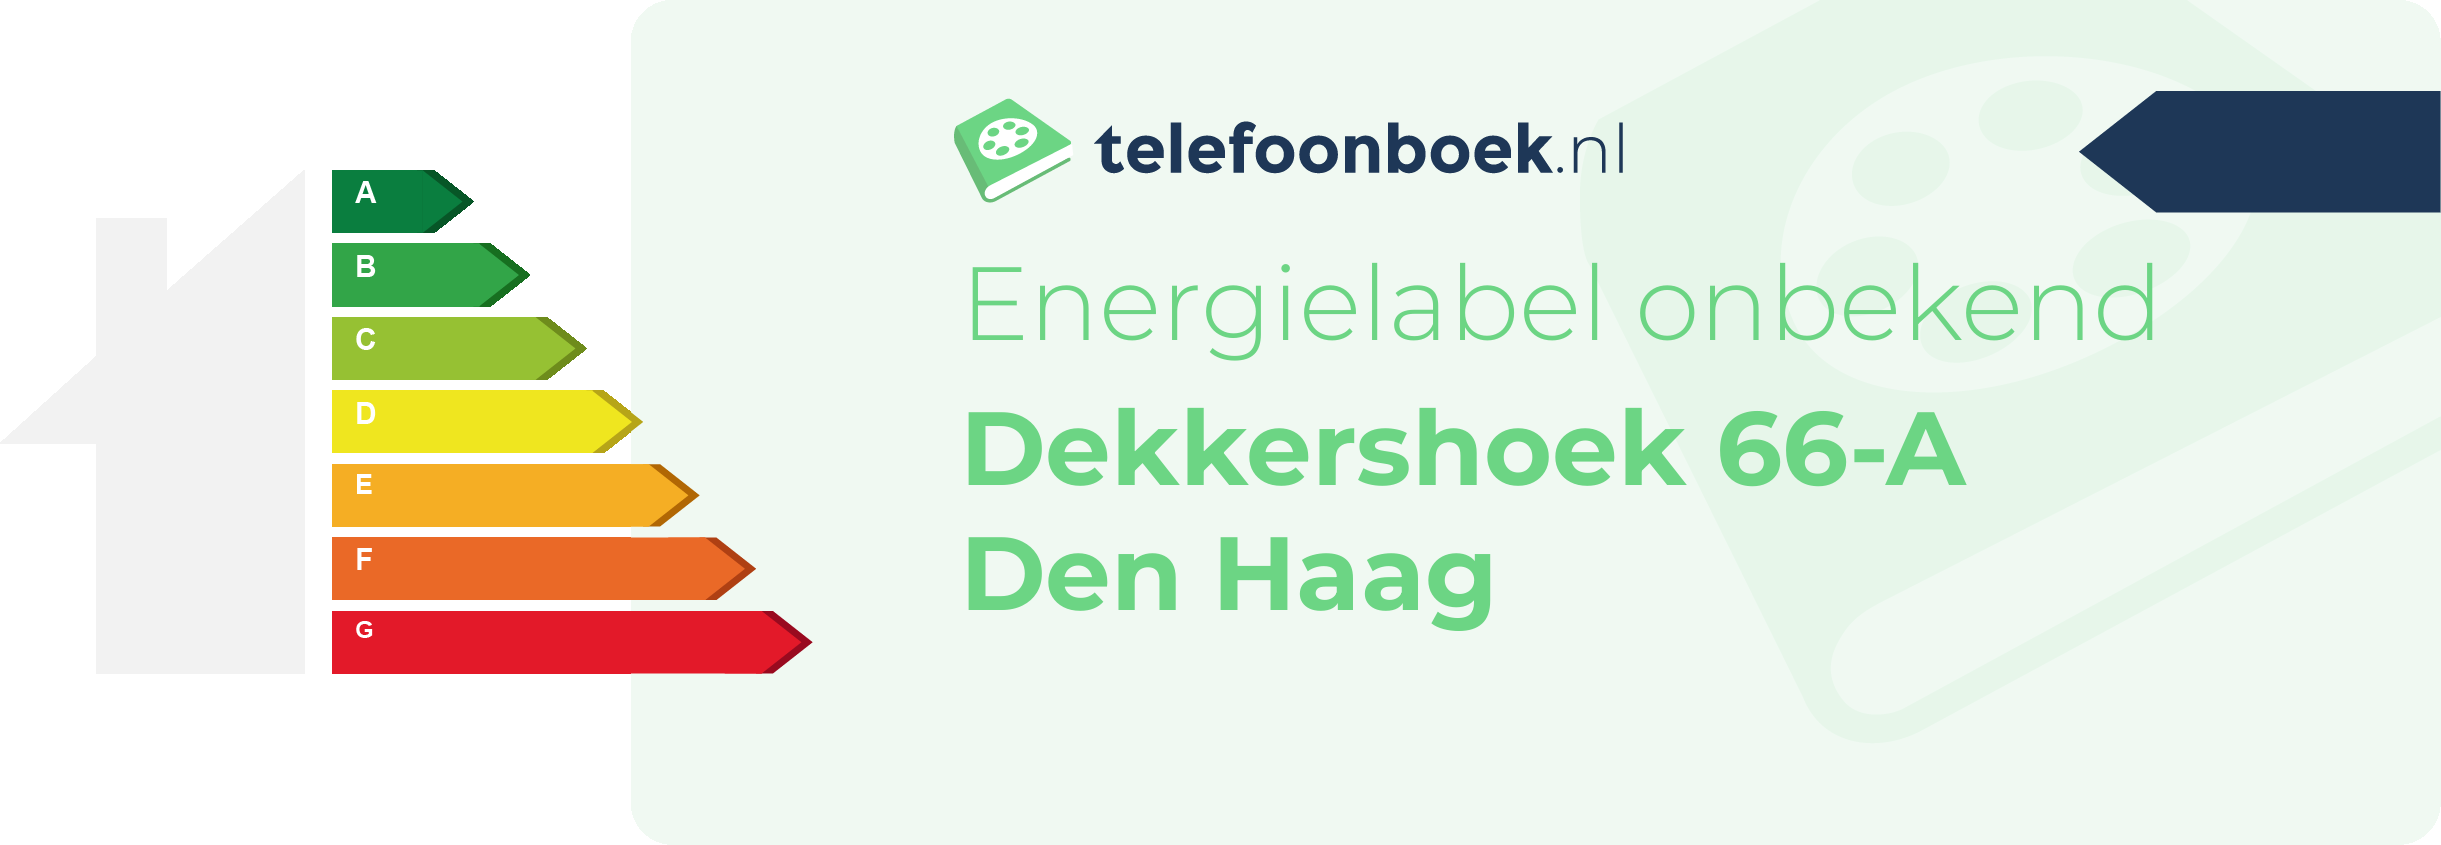 Energielabel Dekkershoek 66-A Den Haag